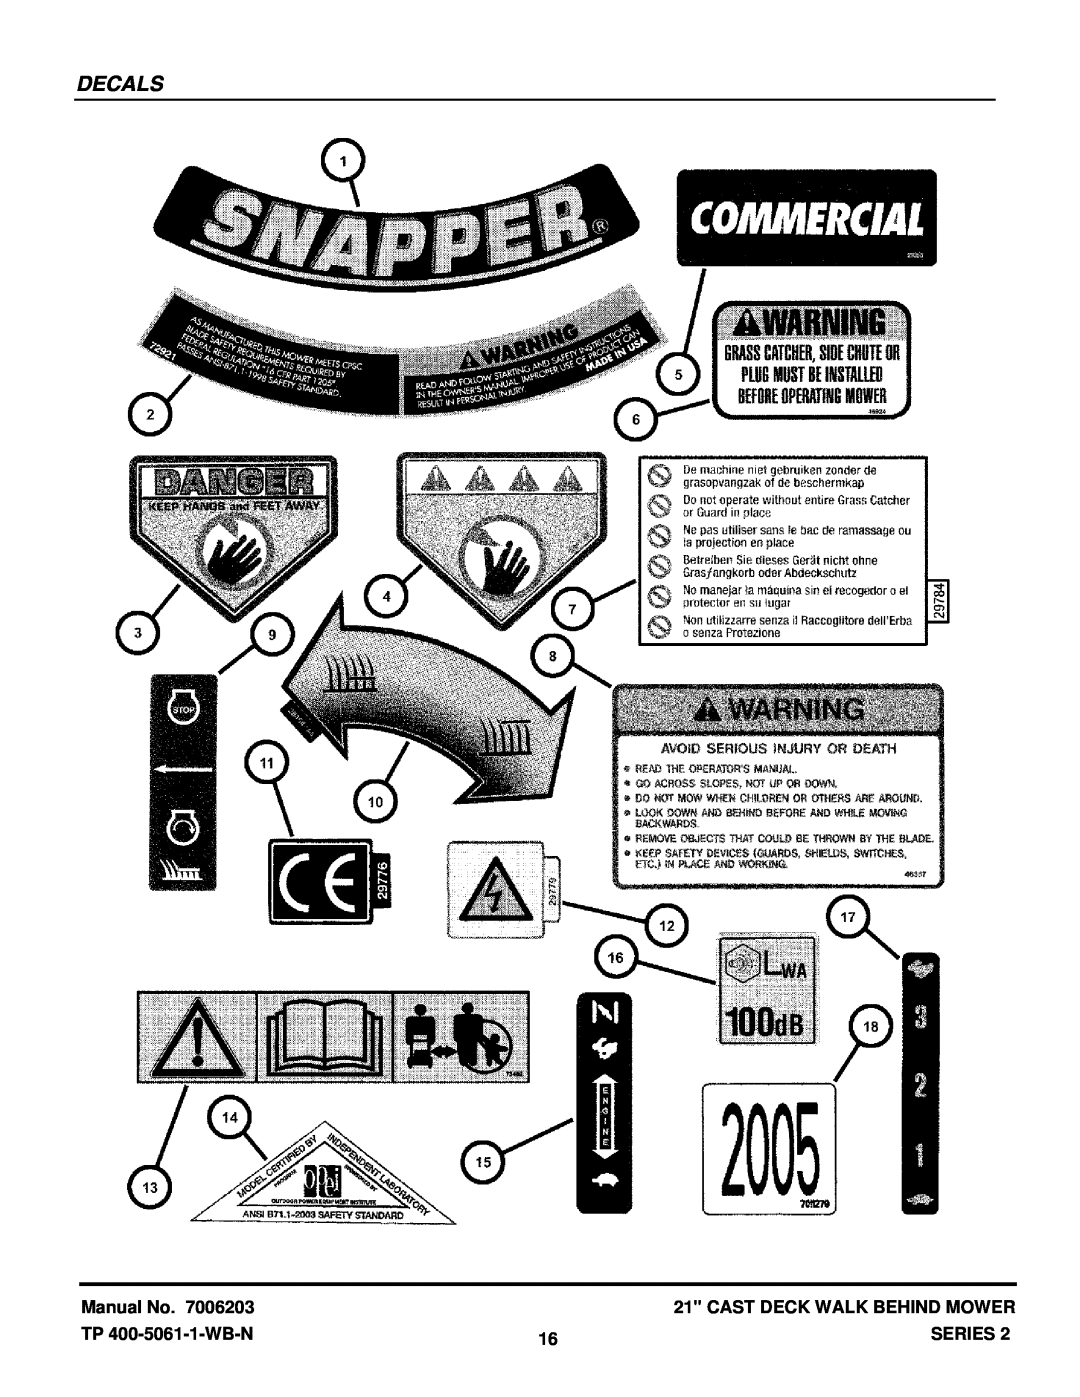 Snapper ECLP21602KWV manual Decals, Cast Deck Walk Behind Mower, TP 400-5061-1-WB-N, Series 